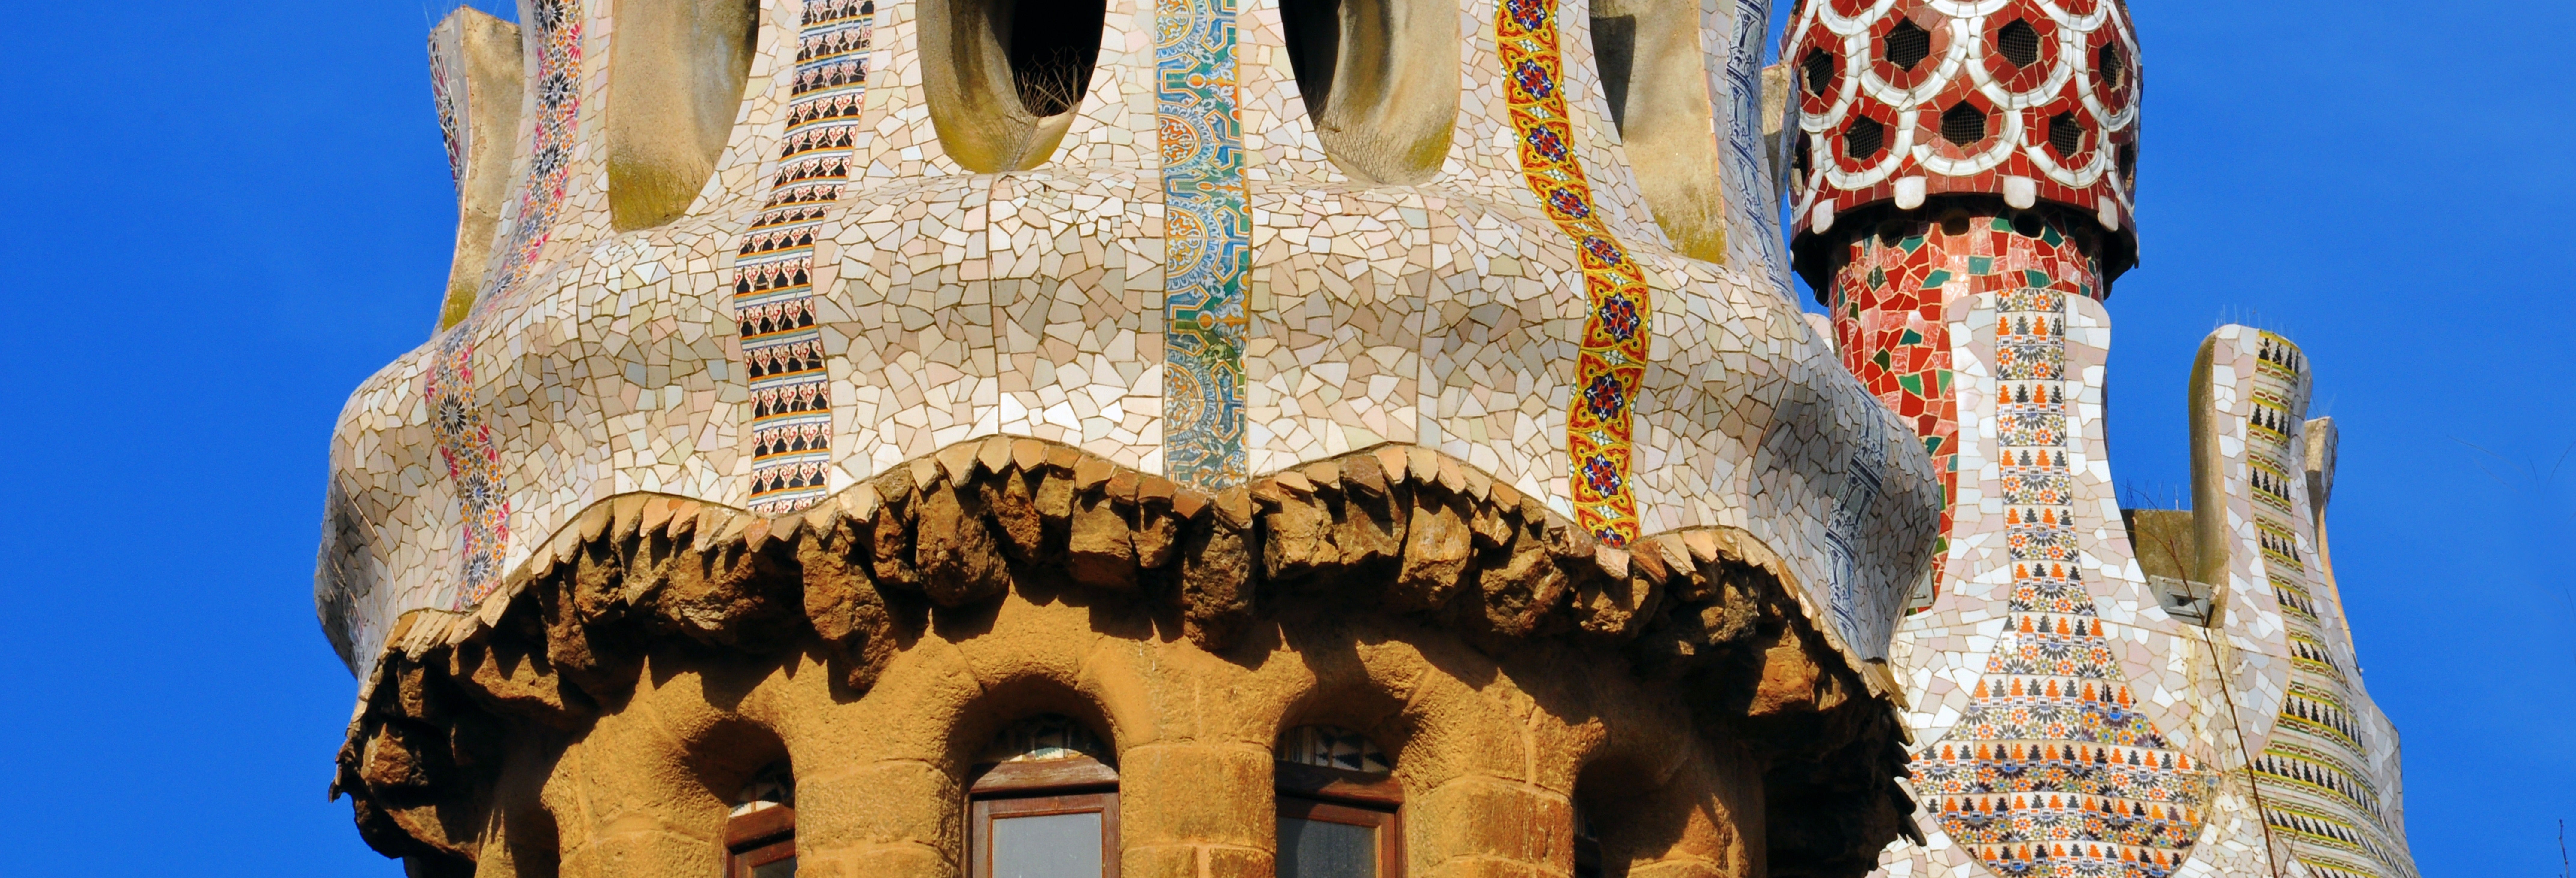 Tour por las maravillas de Gaudí